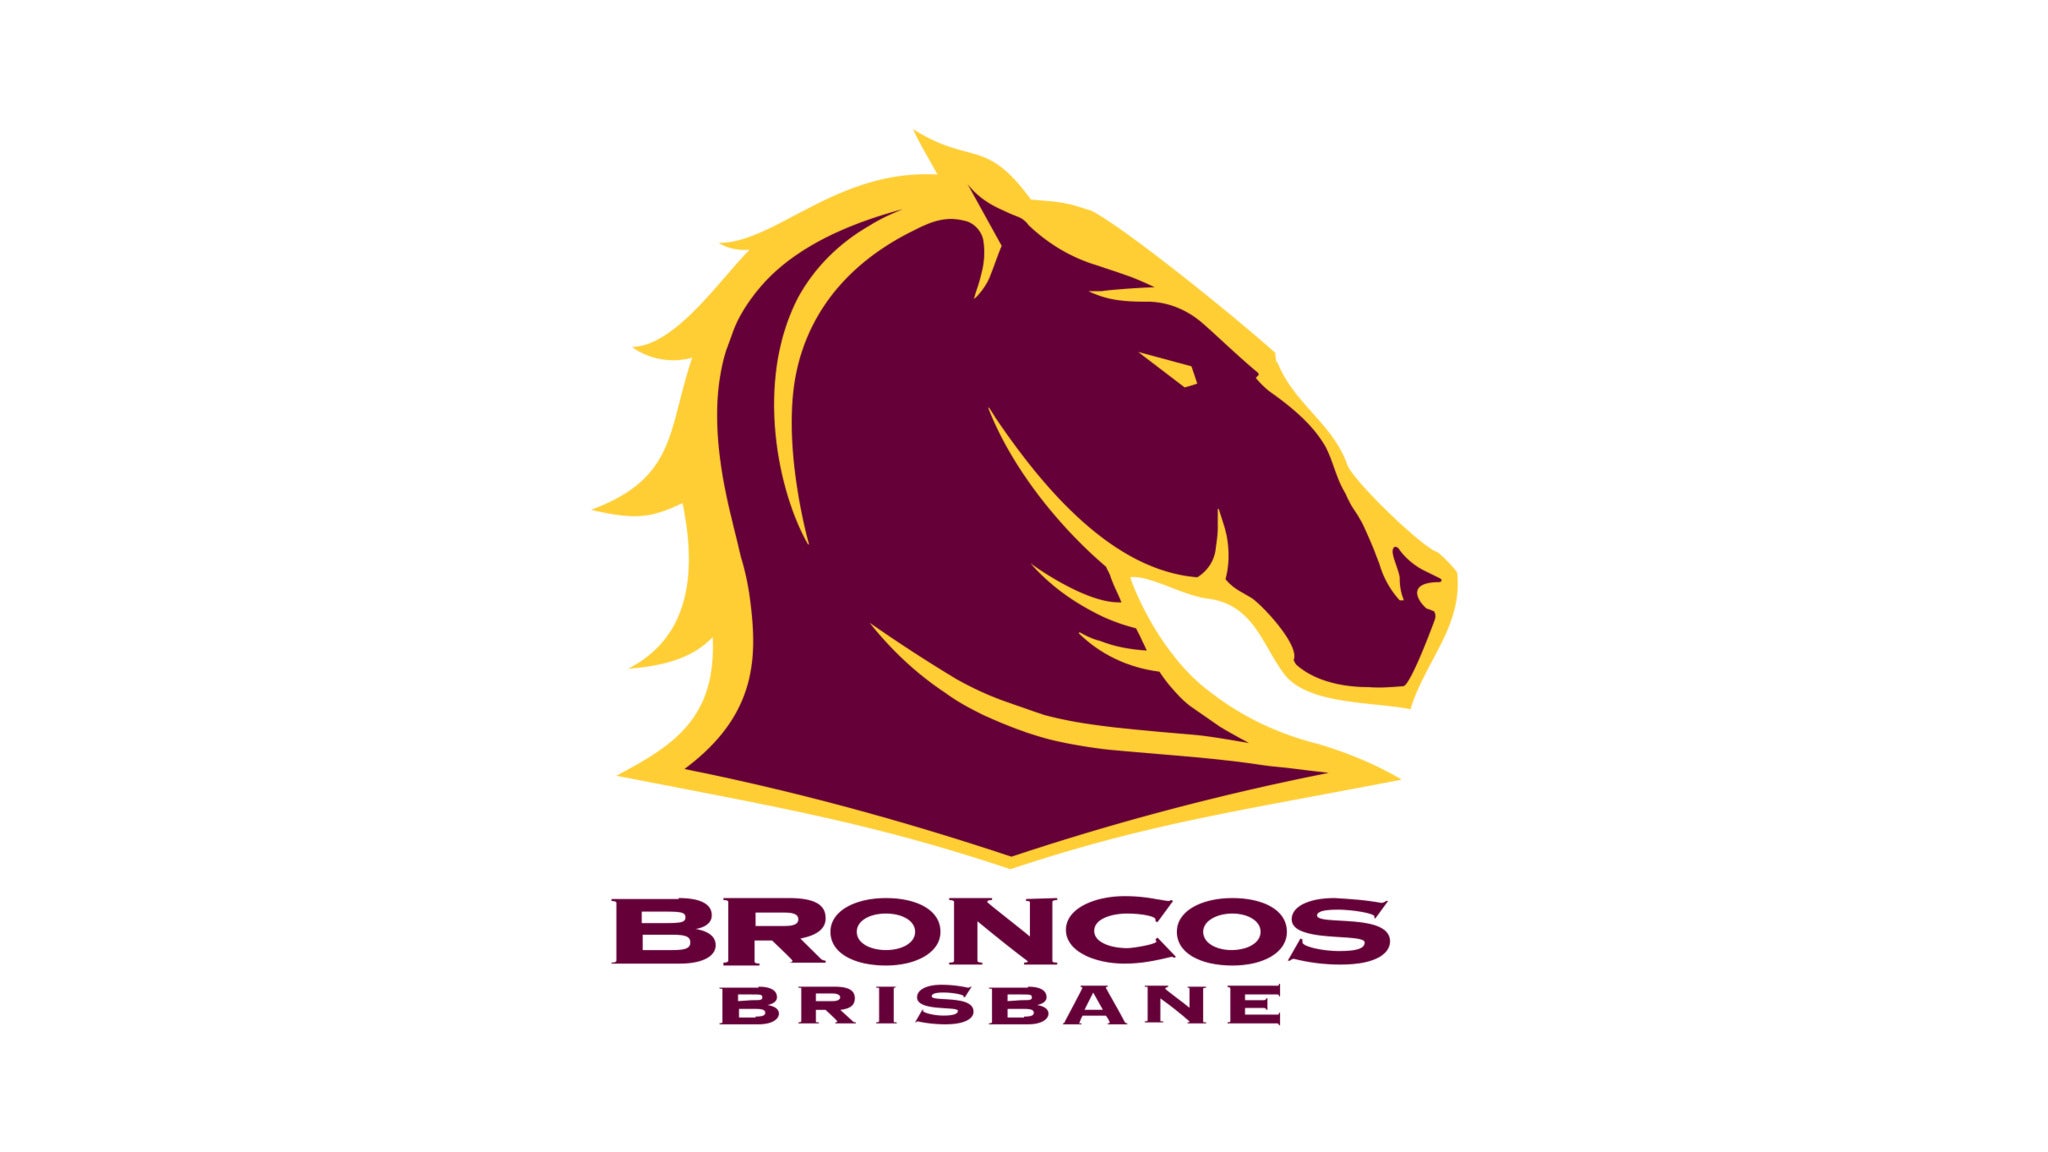 Brisbane Broncos presale information on freepresalepasswords.com